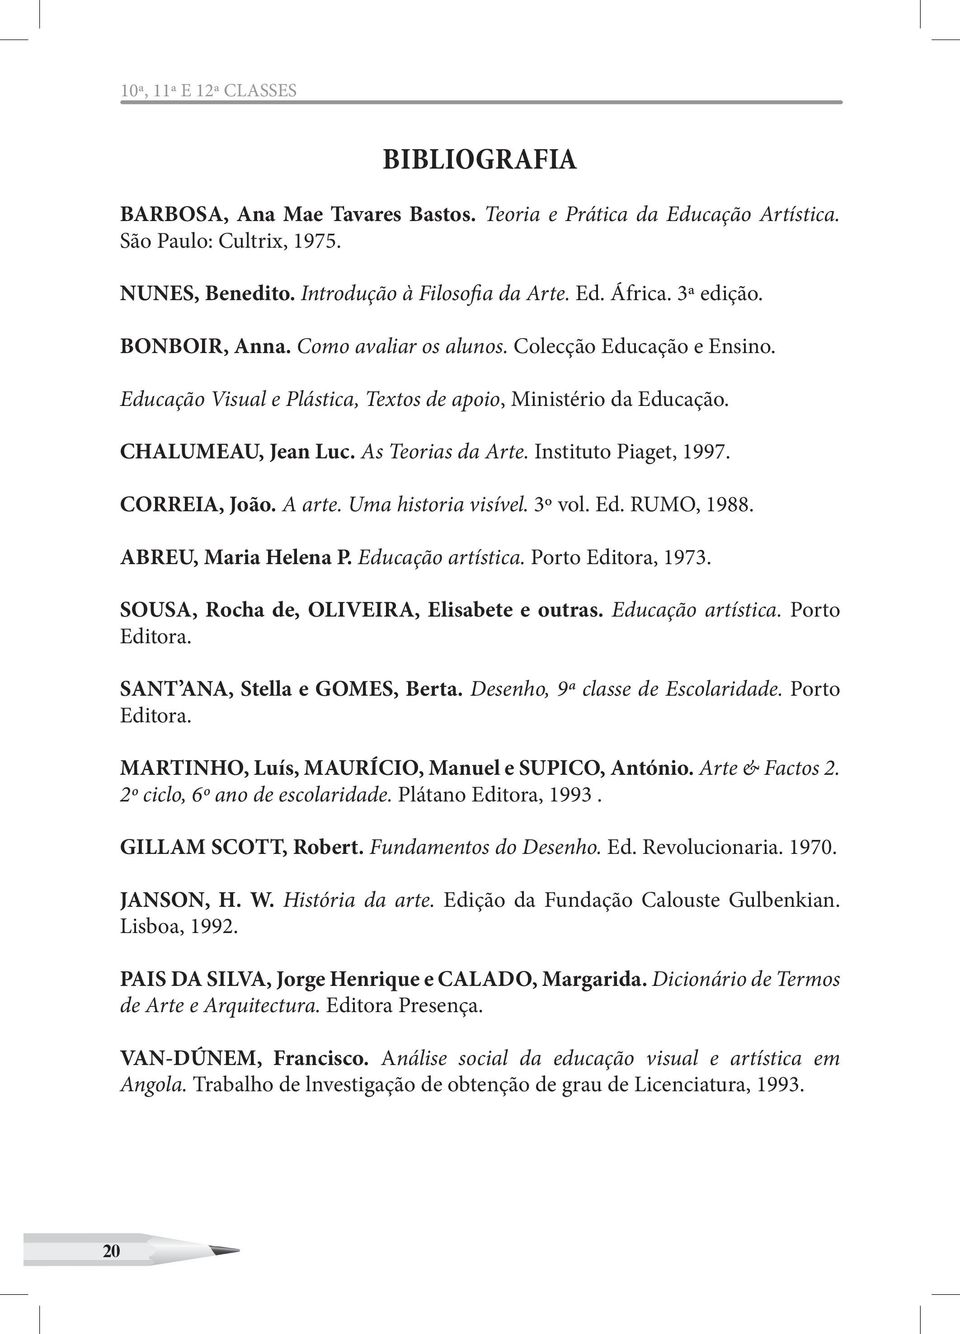 Instituto Piaget, 1997. CORREIA, João. A arte. Uma historia visível. 3º vol. Ed. RUMO, 1988. ABREU, Maria Helena P. Educação artística. Porto Editora, 1973.